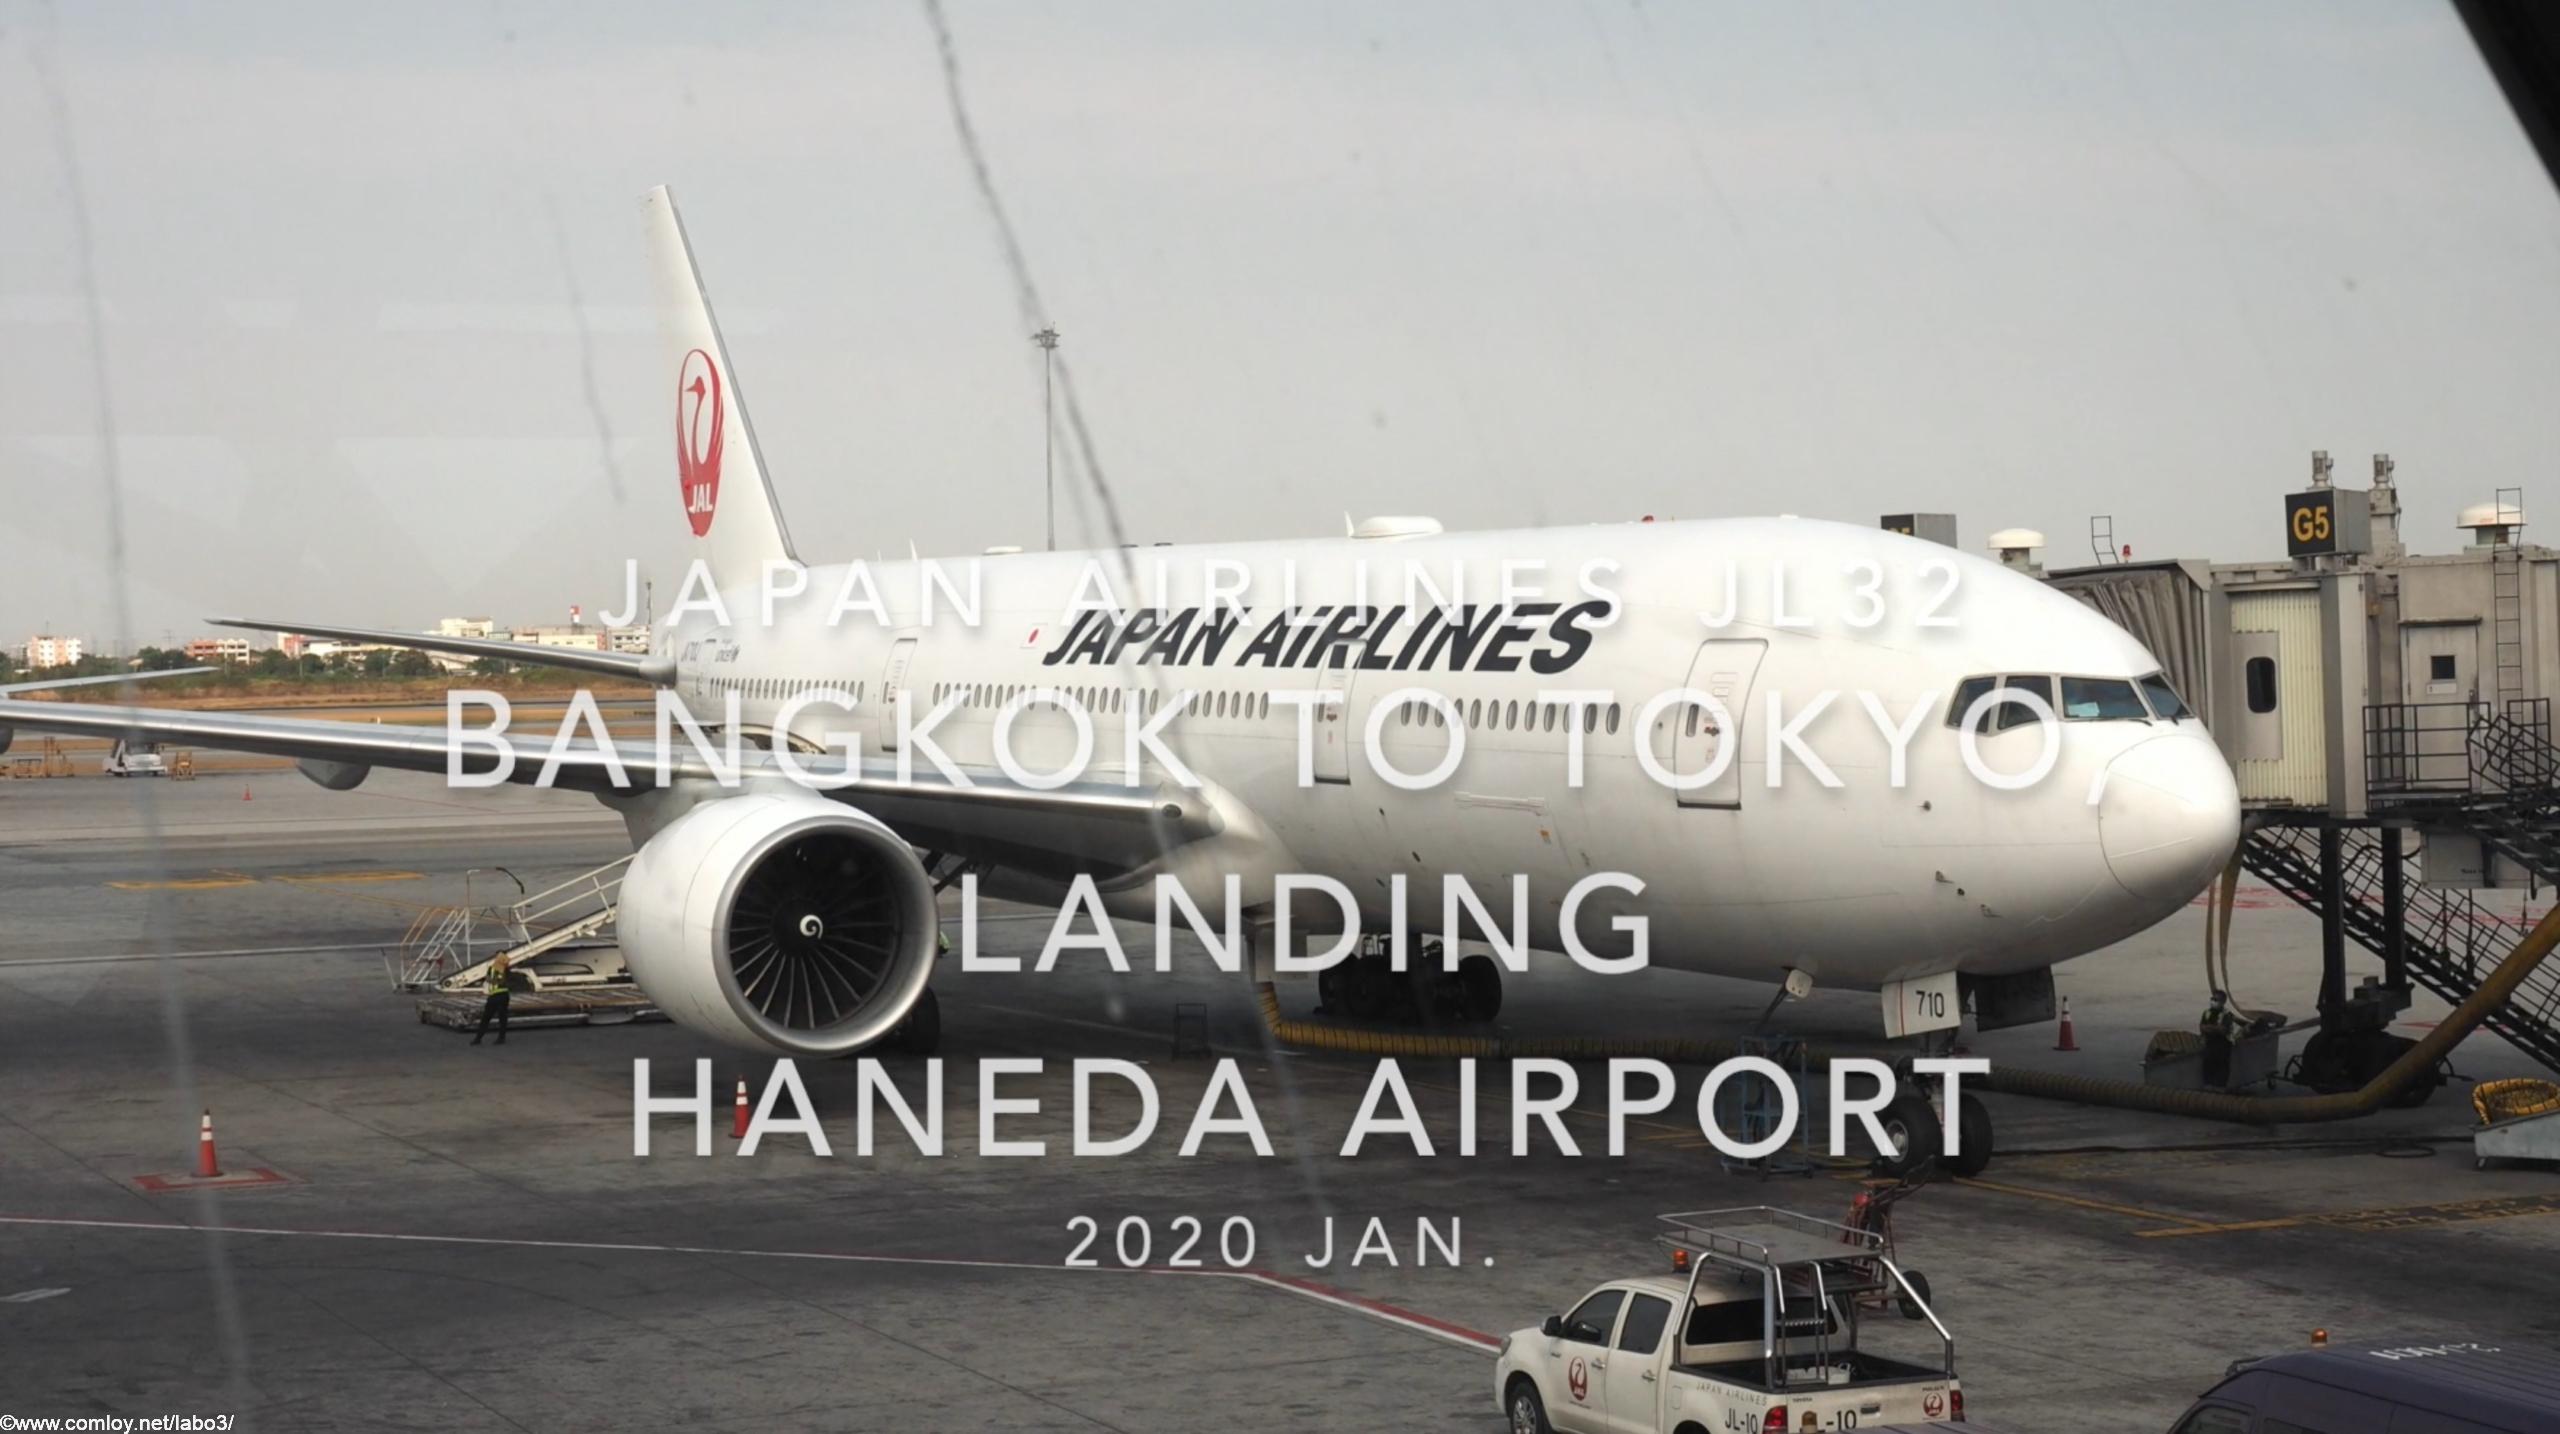 【機内から離着陸映像】2020 Jan Japan Airlines JL32 Bangkok to TOKYO HANEDA, Landing TOKYO HANEDA Airport